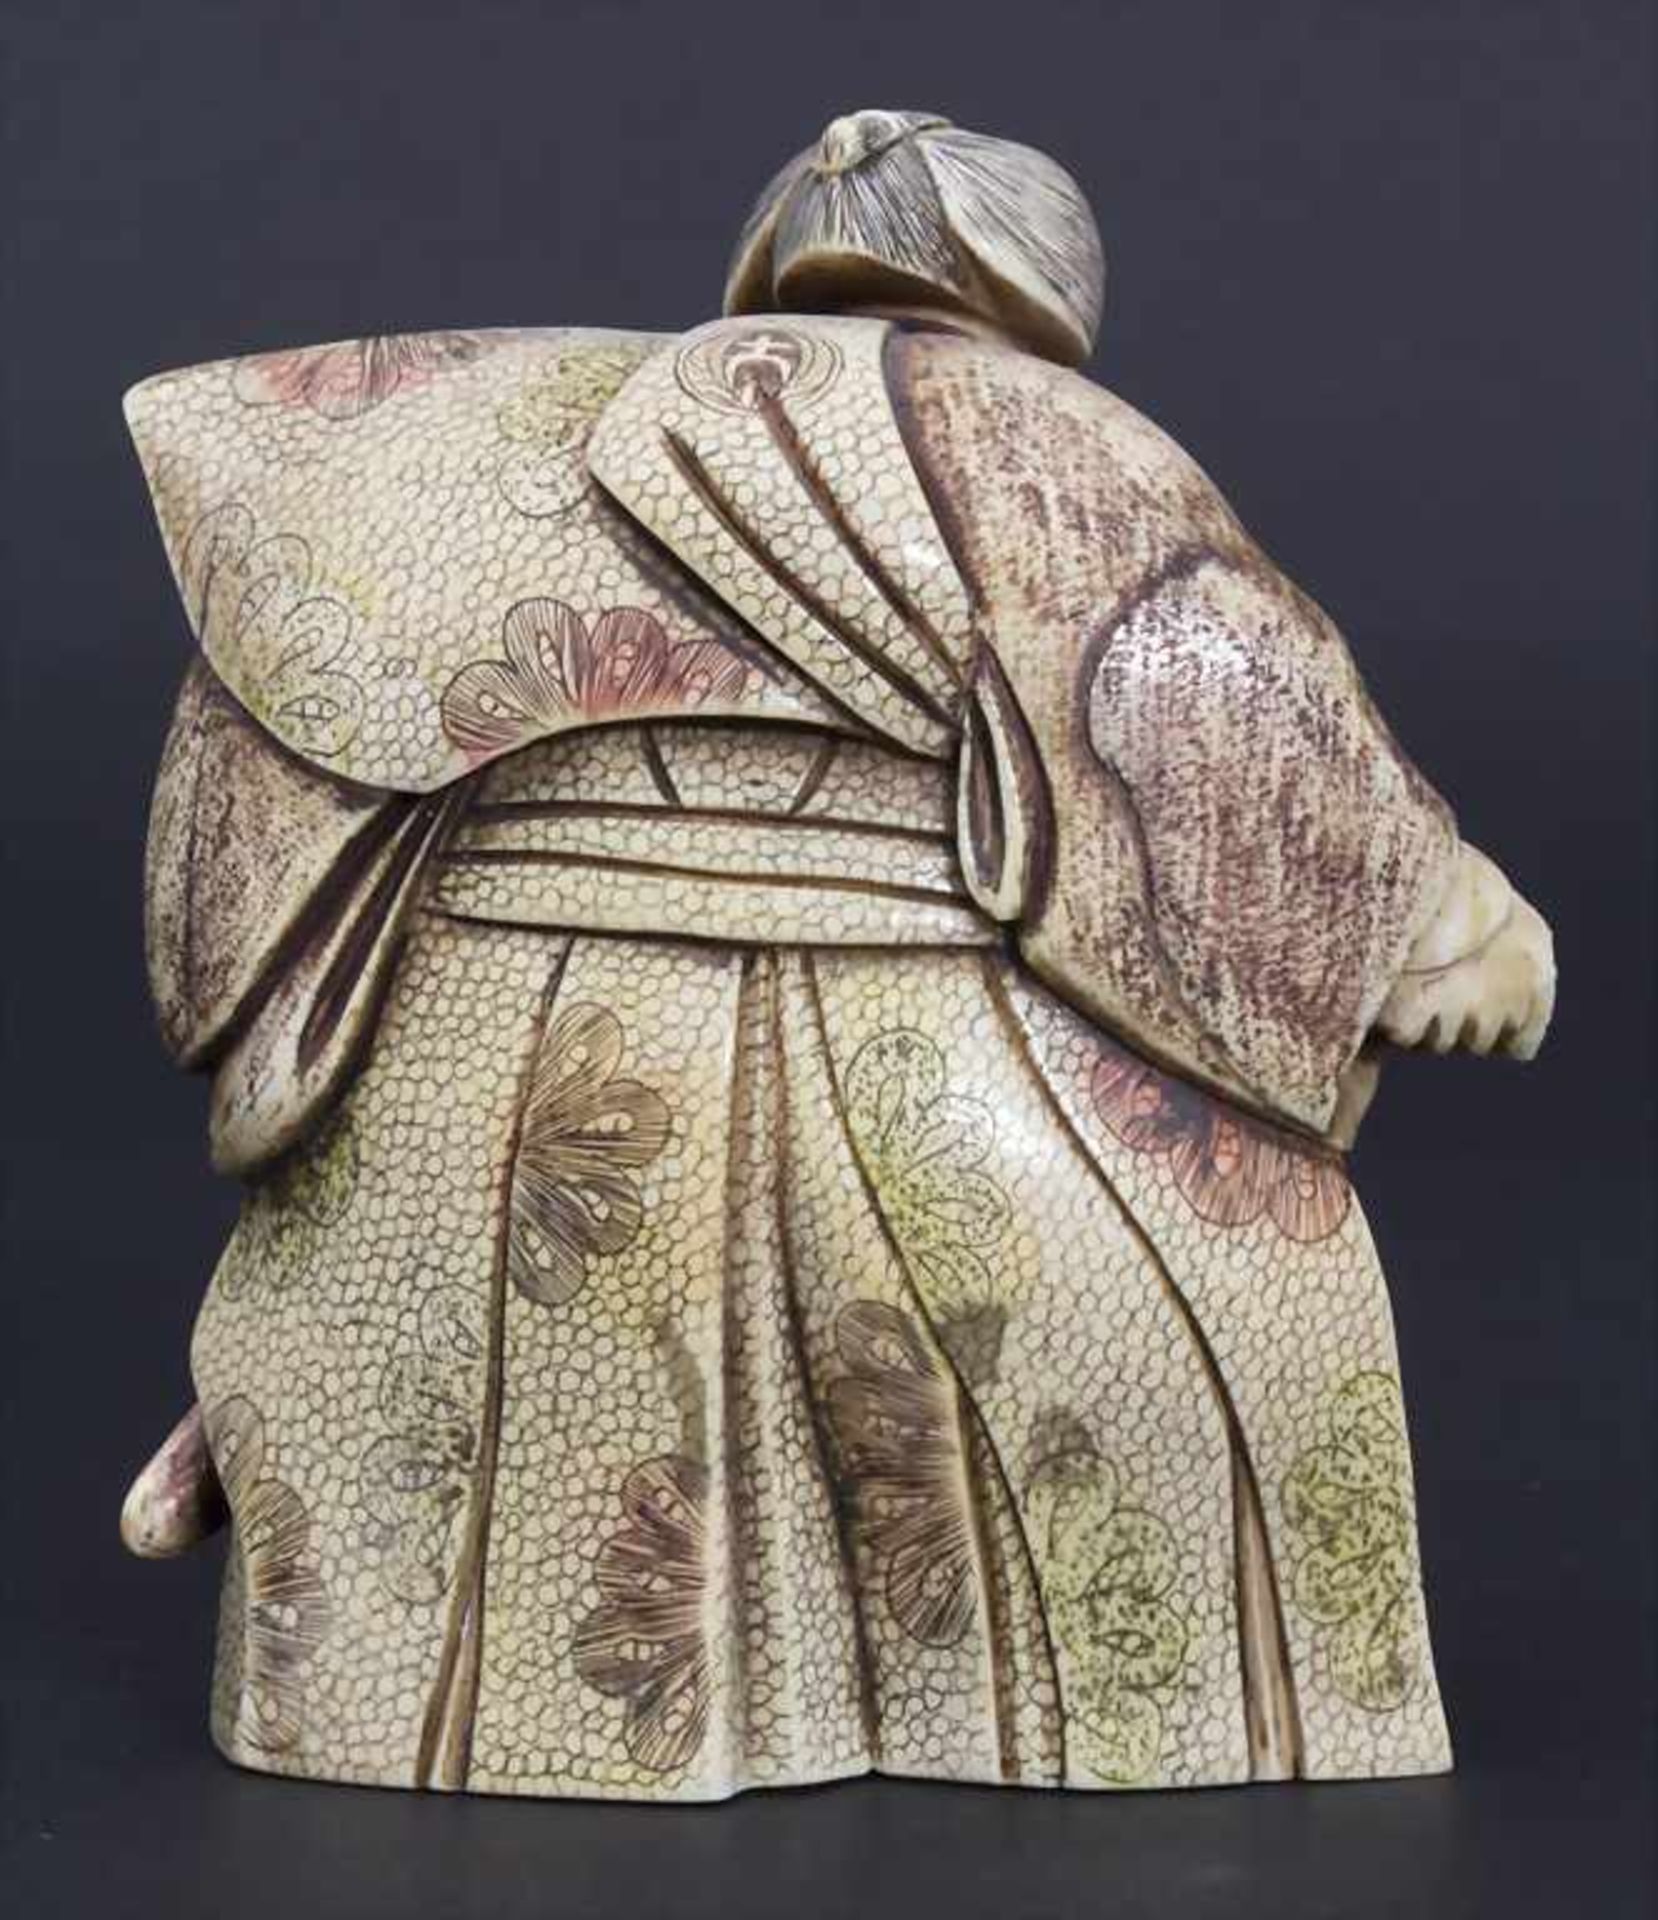 Okimono 'Samuraikrieger' / 'A samurai warrior', Japan, um 1900Material: Elfenbein, geschnitzt, - Bild 5 aus 11